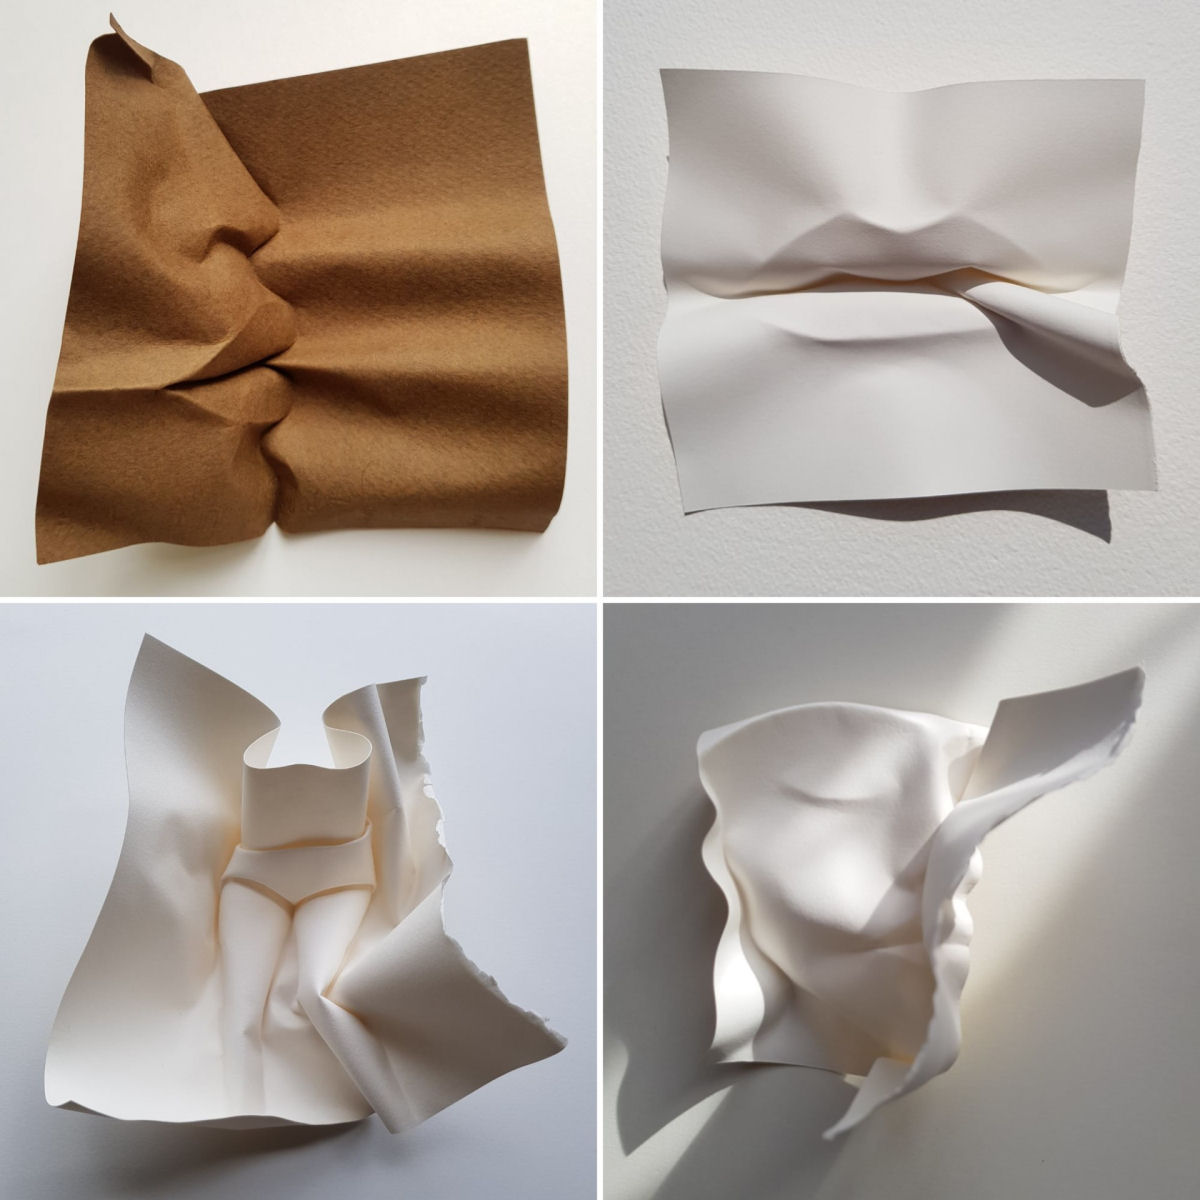 Esculturas sensuais em simples folhas de papel sugerem momentos de intimidade 05